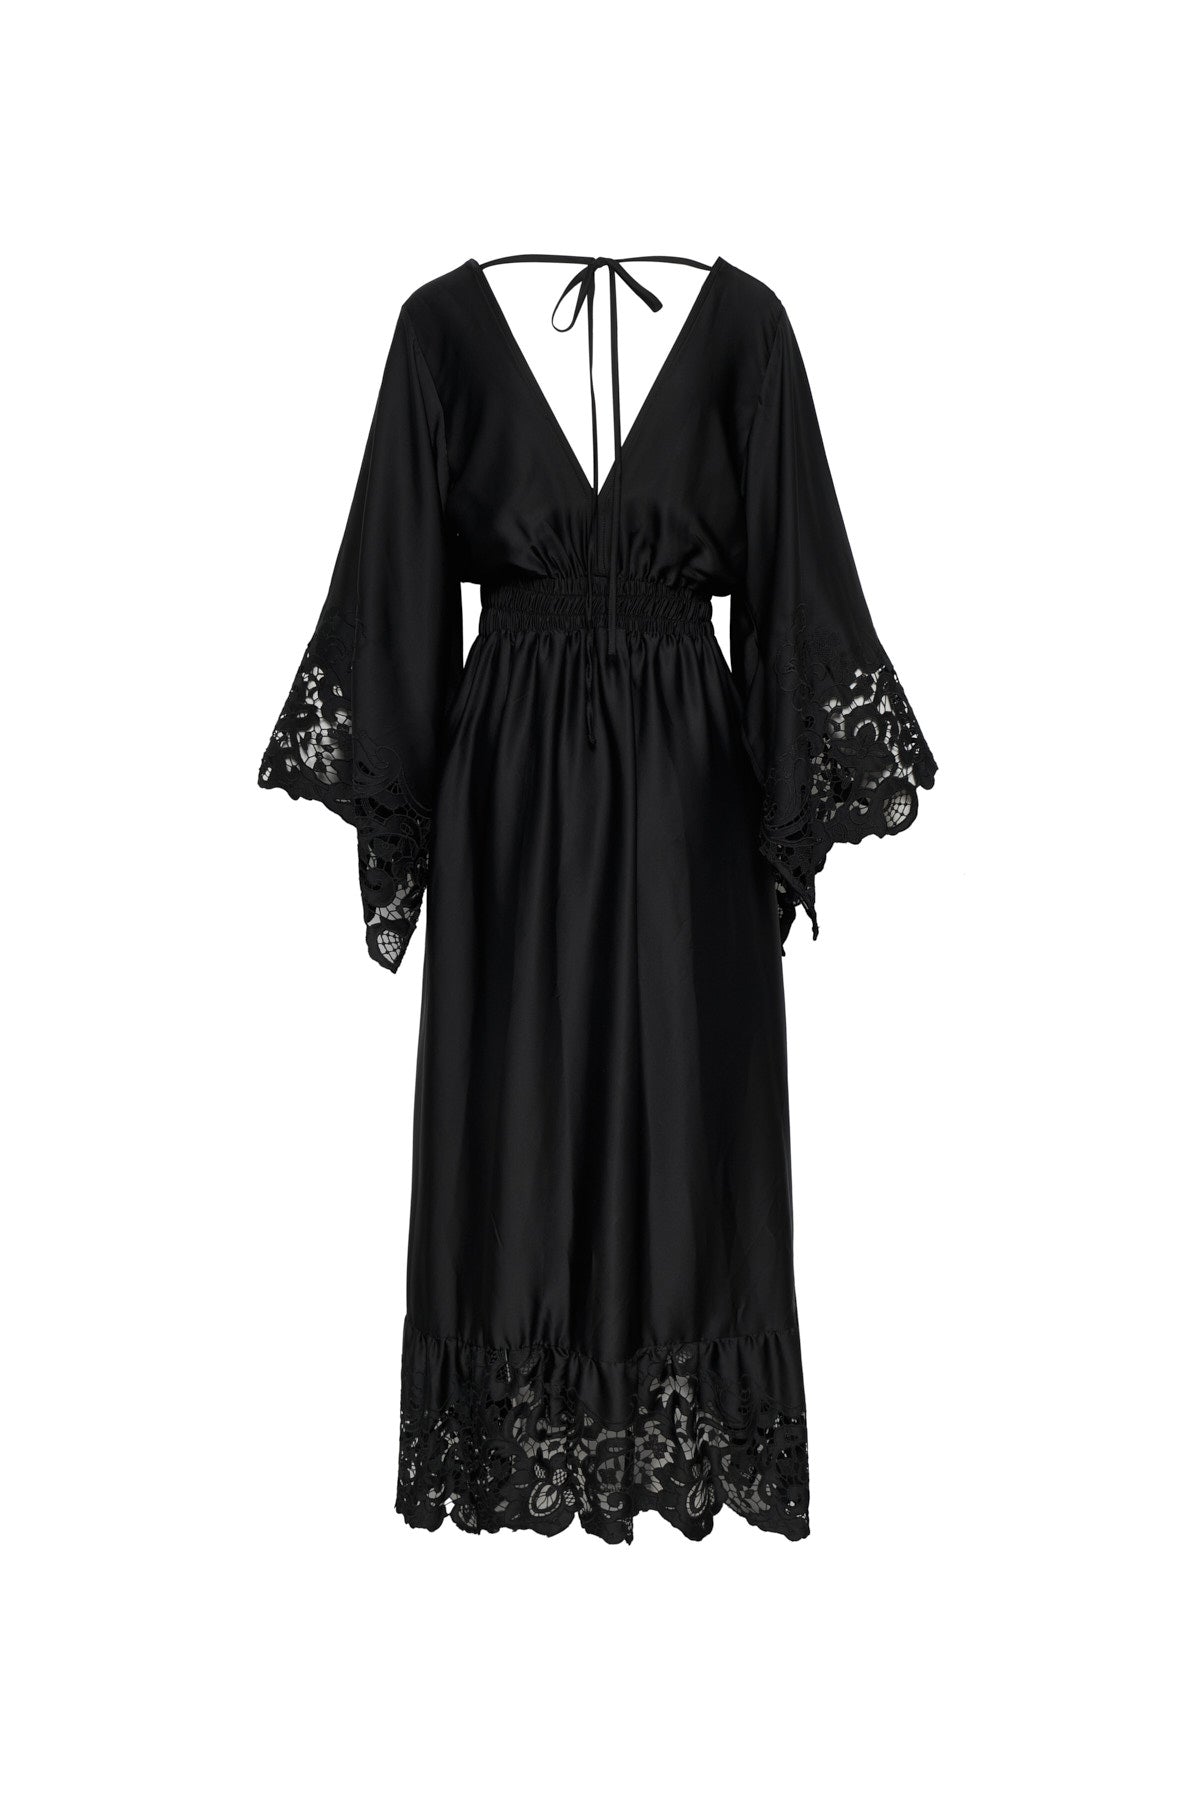 Bari Black Midi Dress